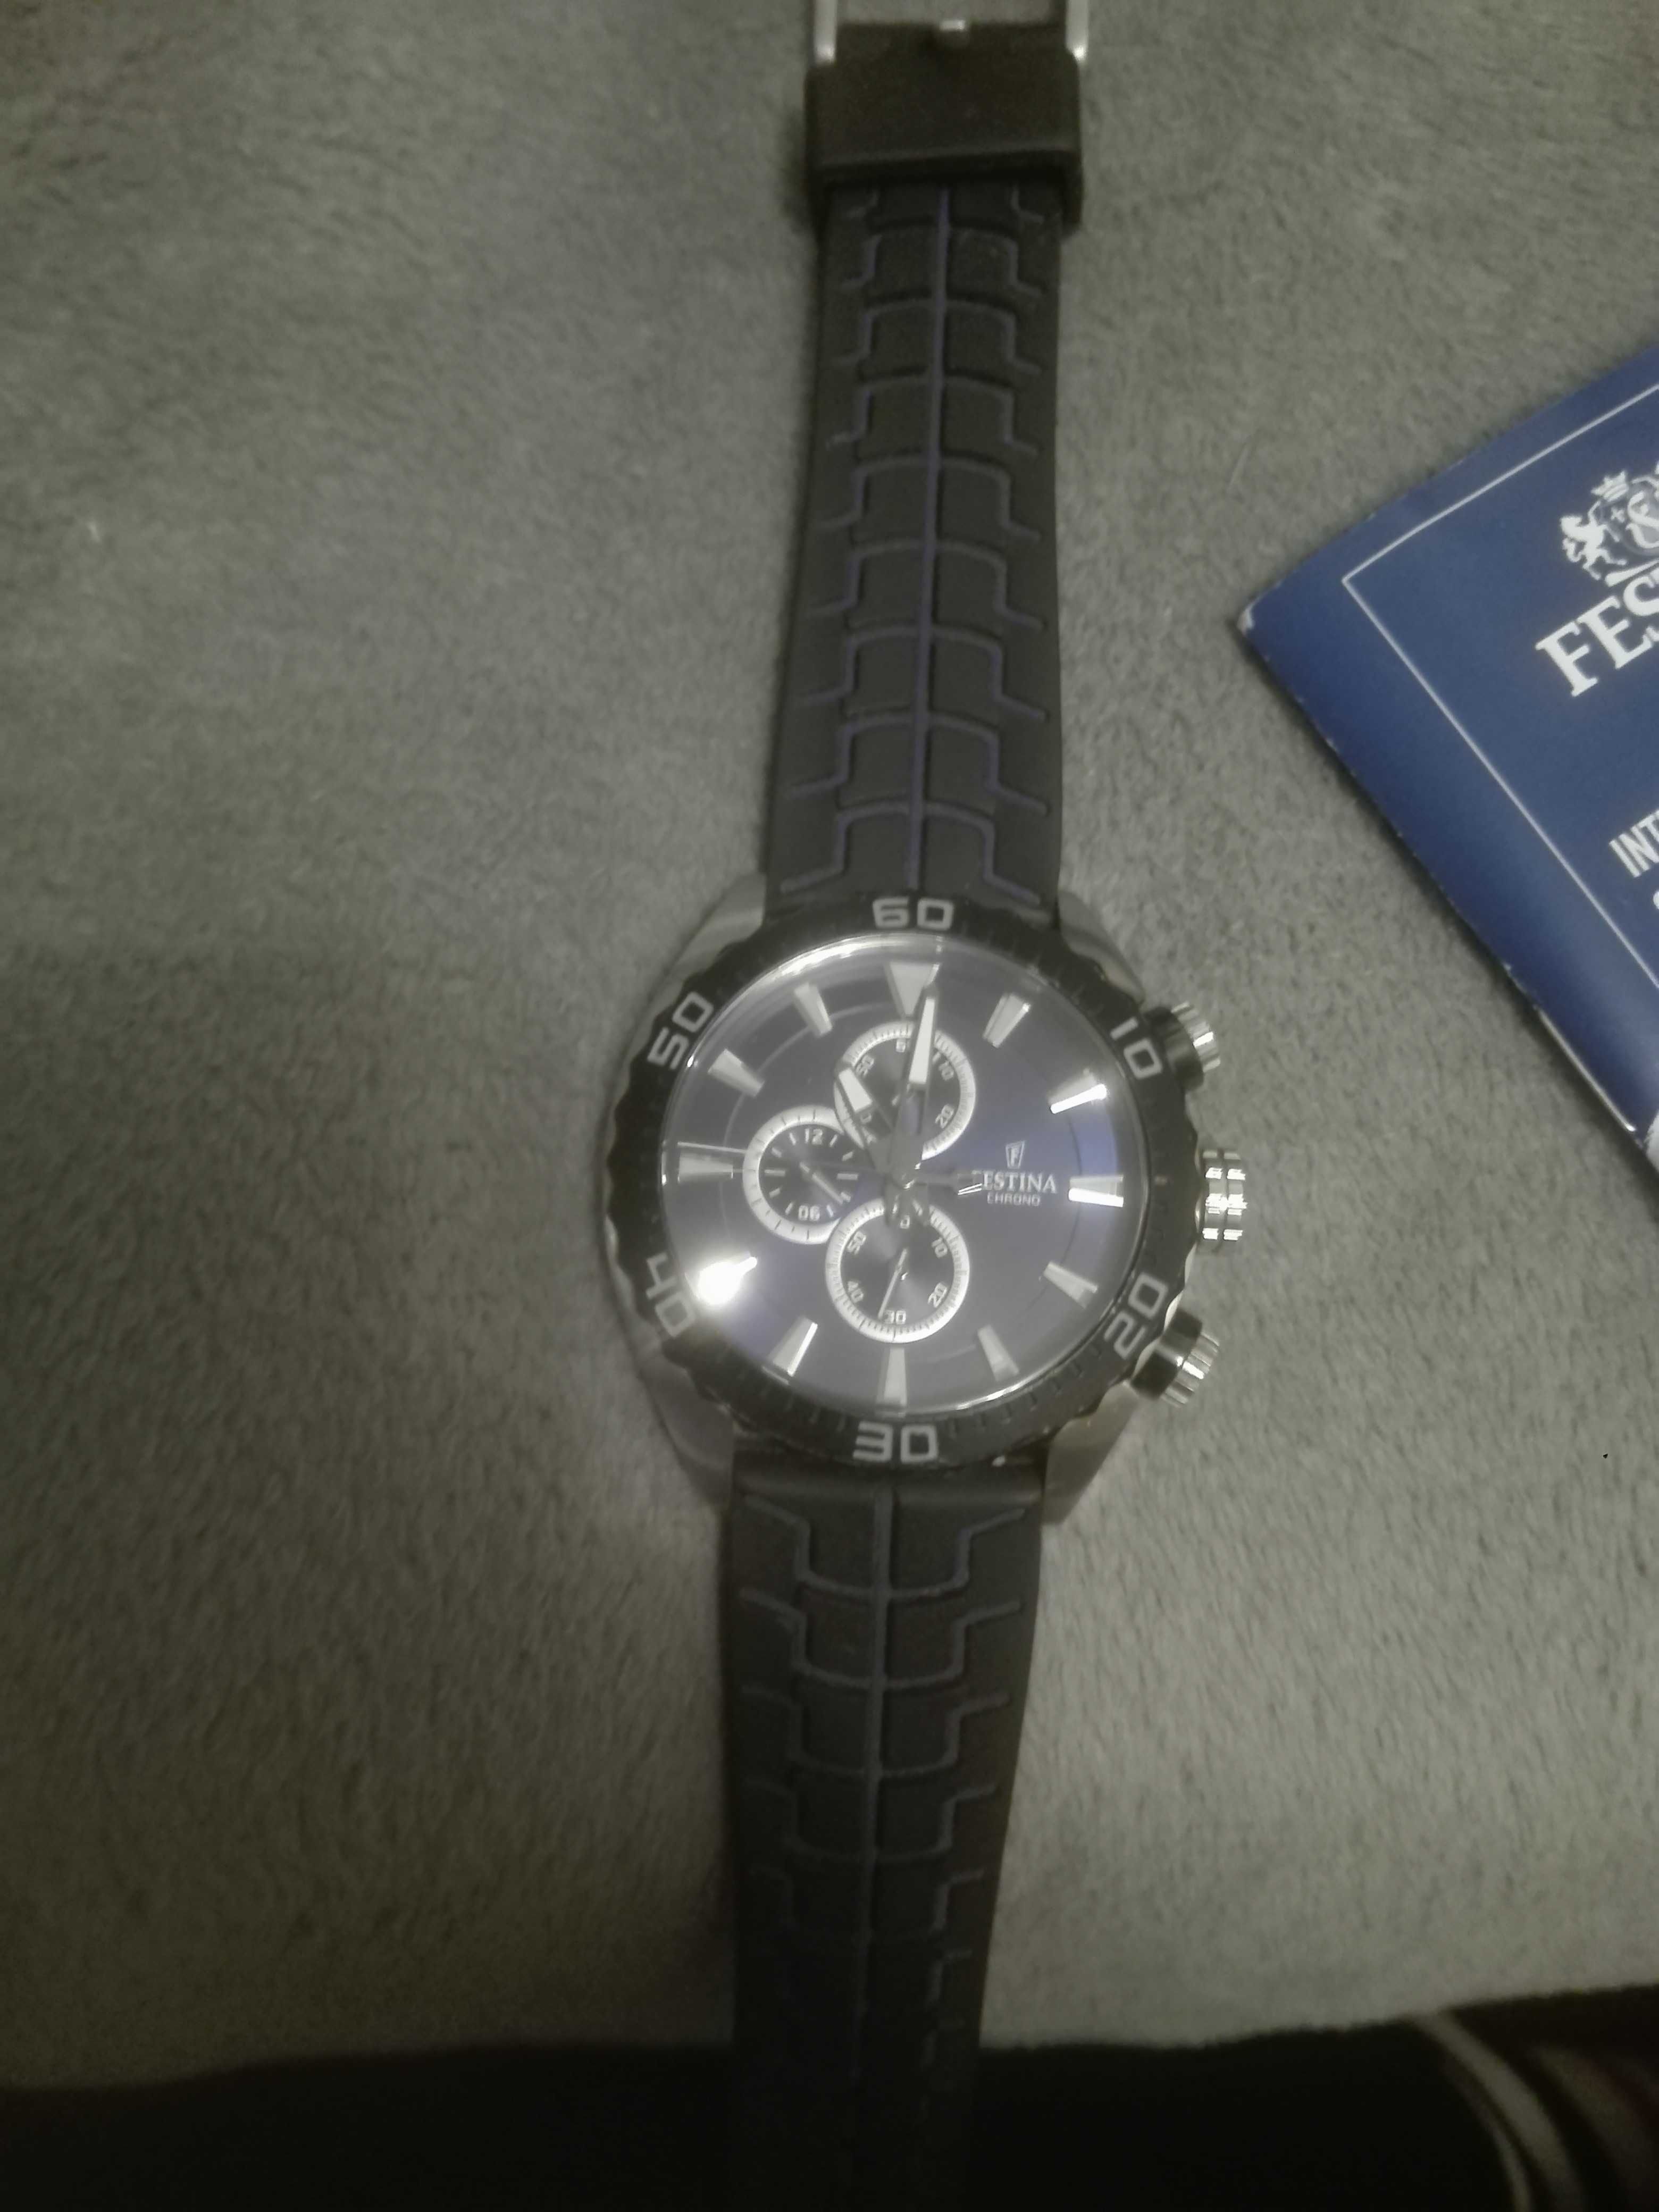 Zegarek FESTINA męski szwajcarski jedyny taki. Najnowszy model.